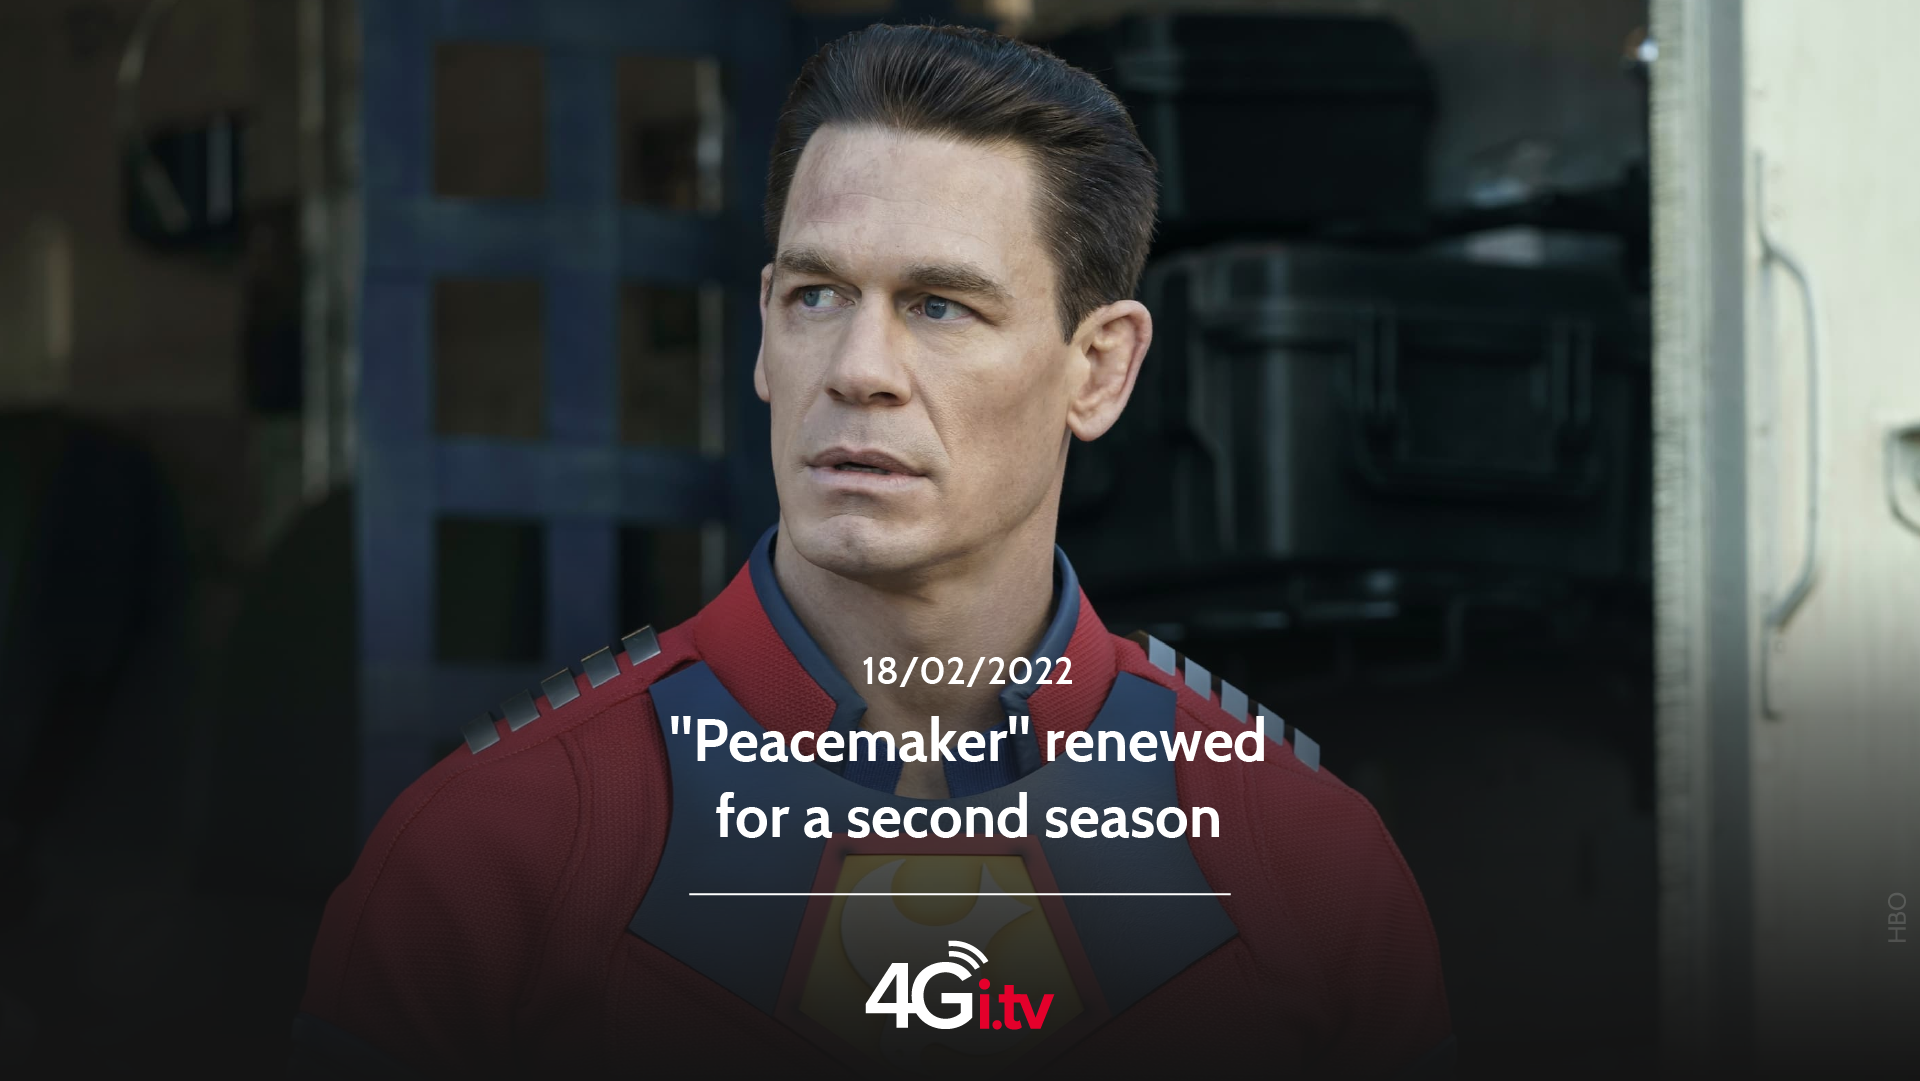 Lesen Sie mehr über den Artikel “Peacemaker” renewed for a second season